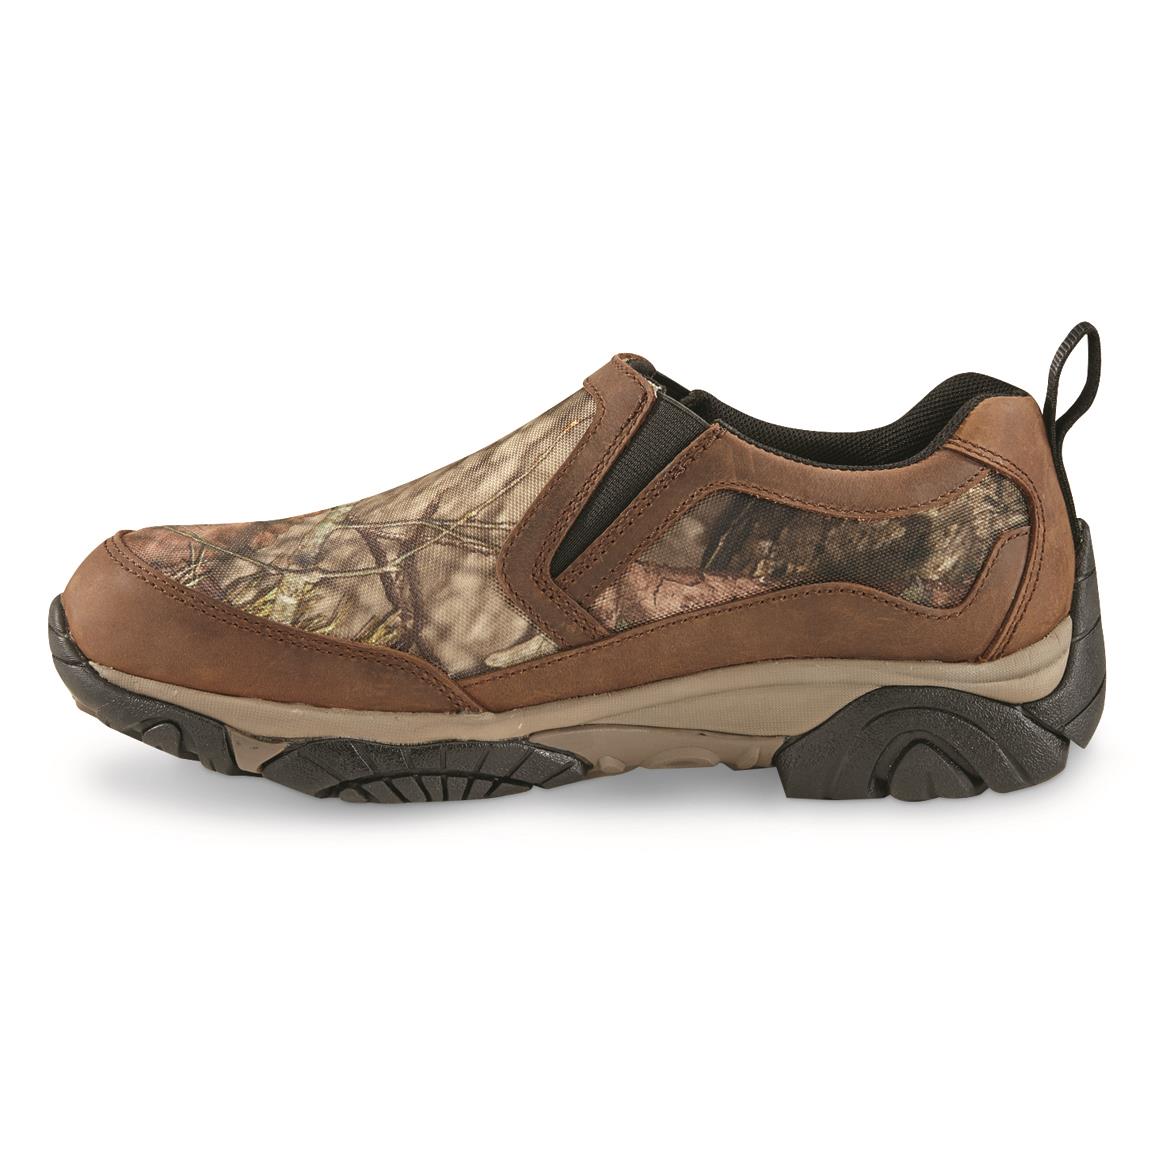 Huk Mahi Shoes, Mossy Oak Bottomland - 725816, Boat & Water Shoes at ...